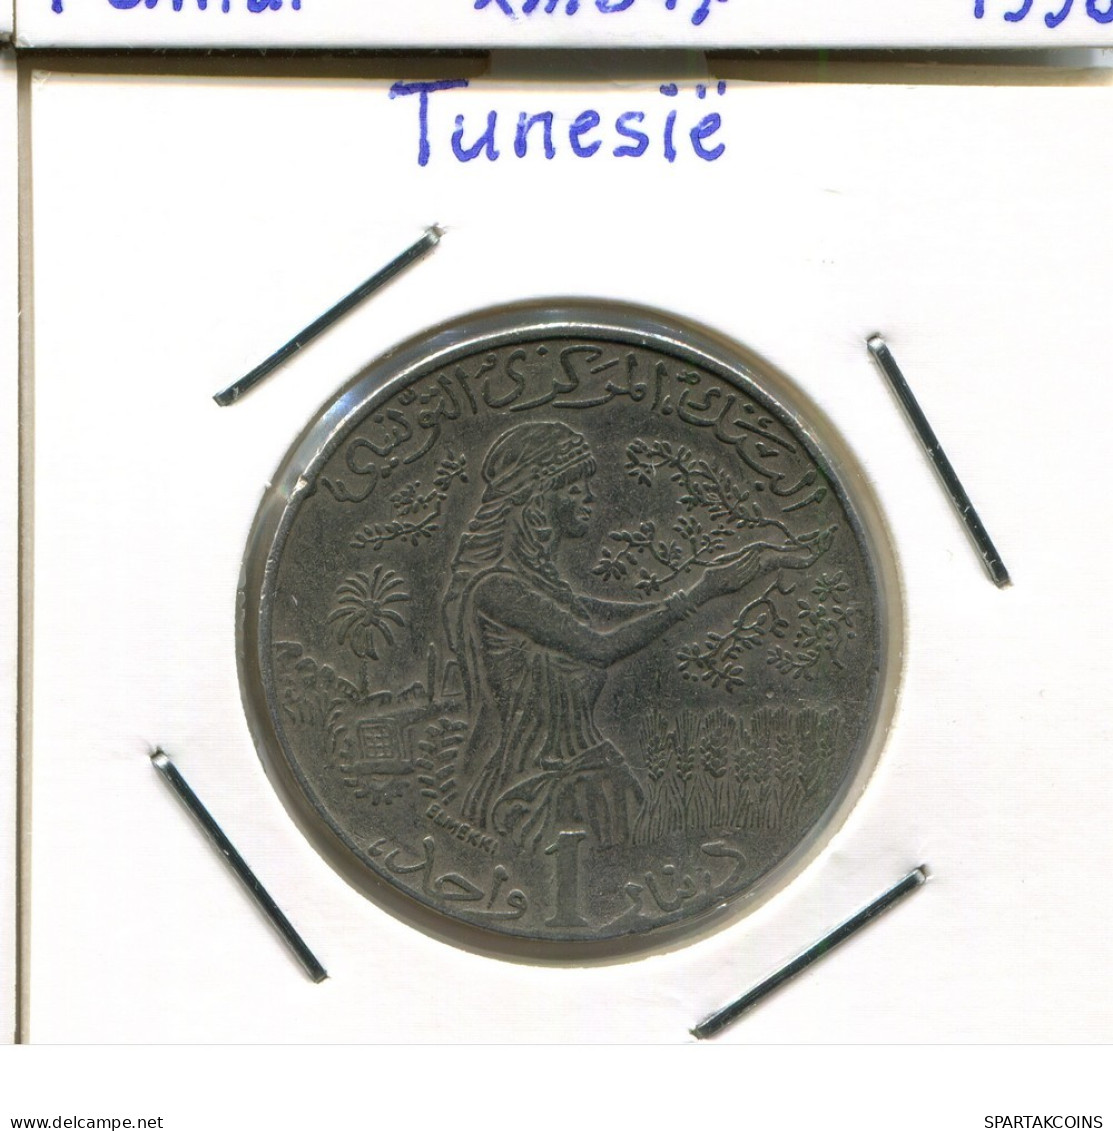 1 DINAR 1997 TÚNEZ TUNISIA Moneda #AP847.2.E.A - Tunesien